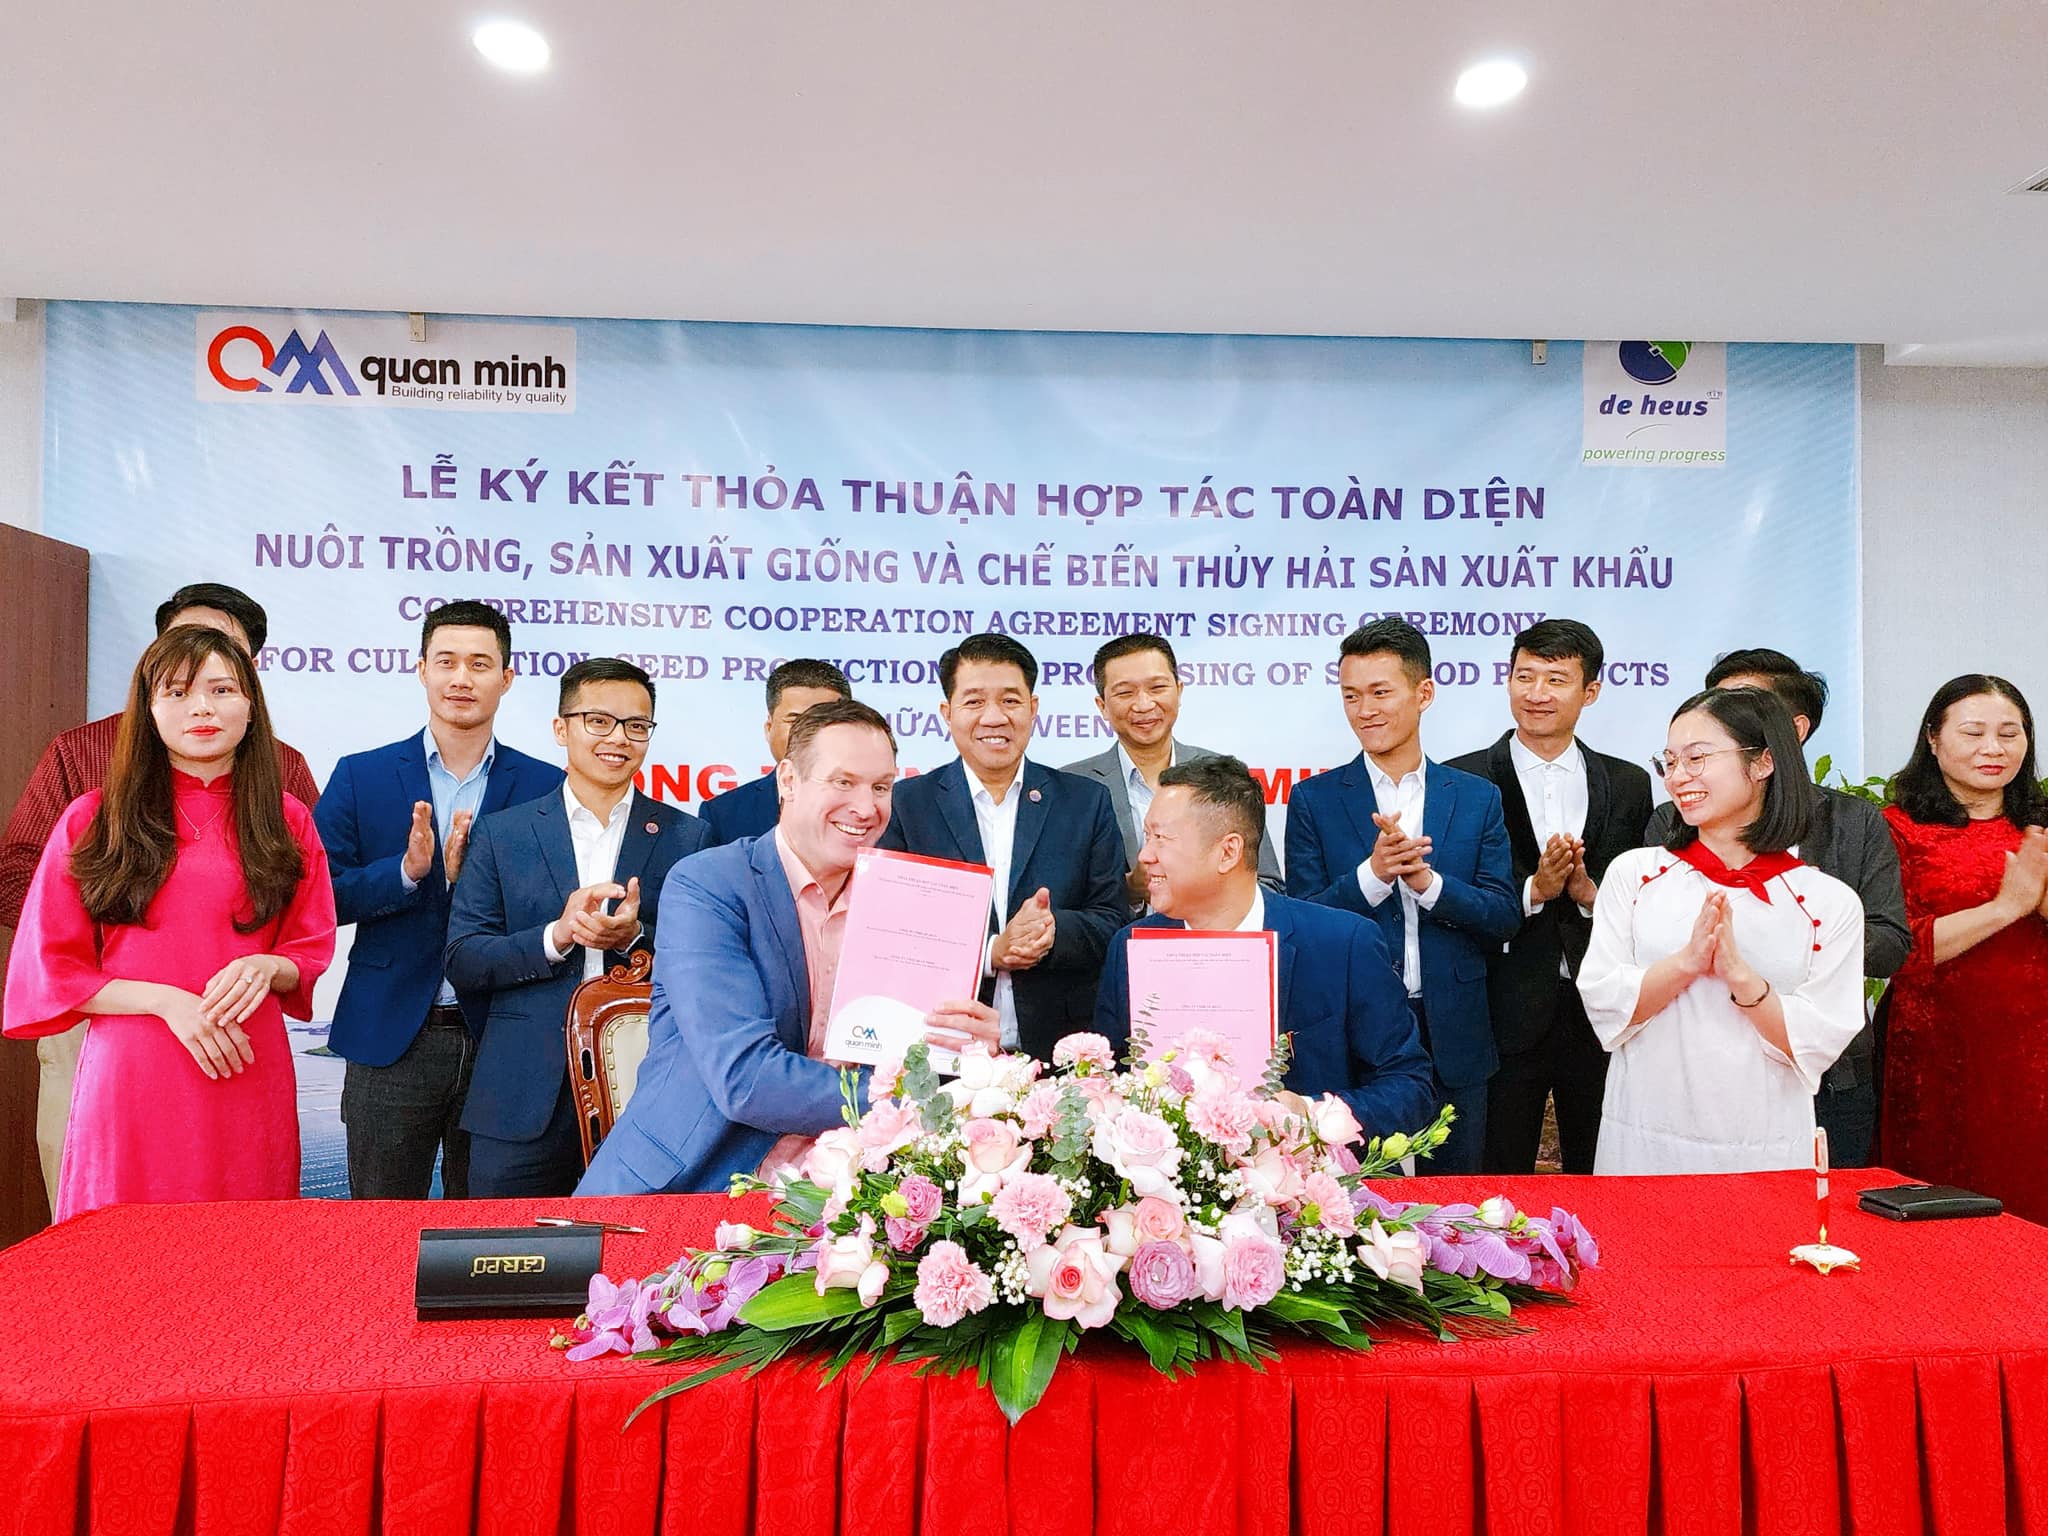 De Heus và Quan Minh ký hợp tác nuôi trồng thủy sản tại huyện đảo của Quảng Ninh, công suất 5-6 tỷ nhuyễn thể/năm- Ảnh 1.